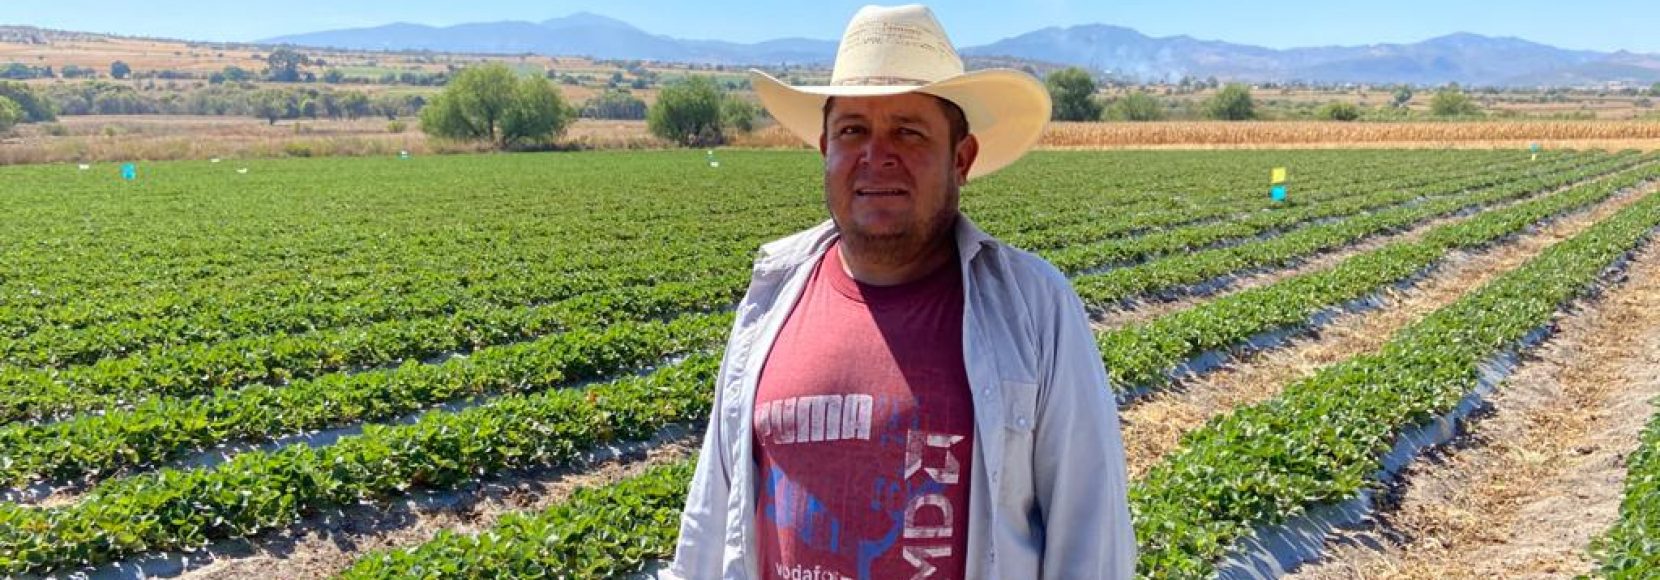 Ramiro Silva is a strawberry farmer in central Mexico